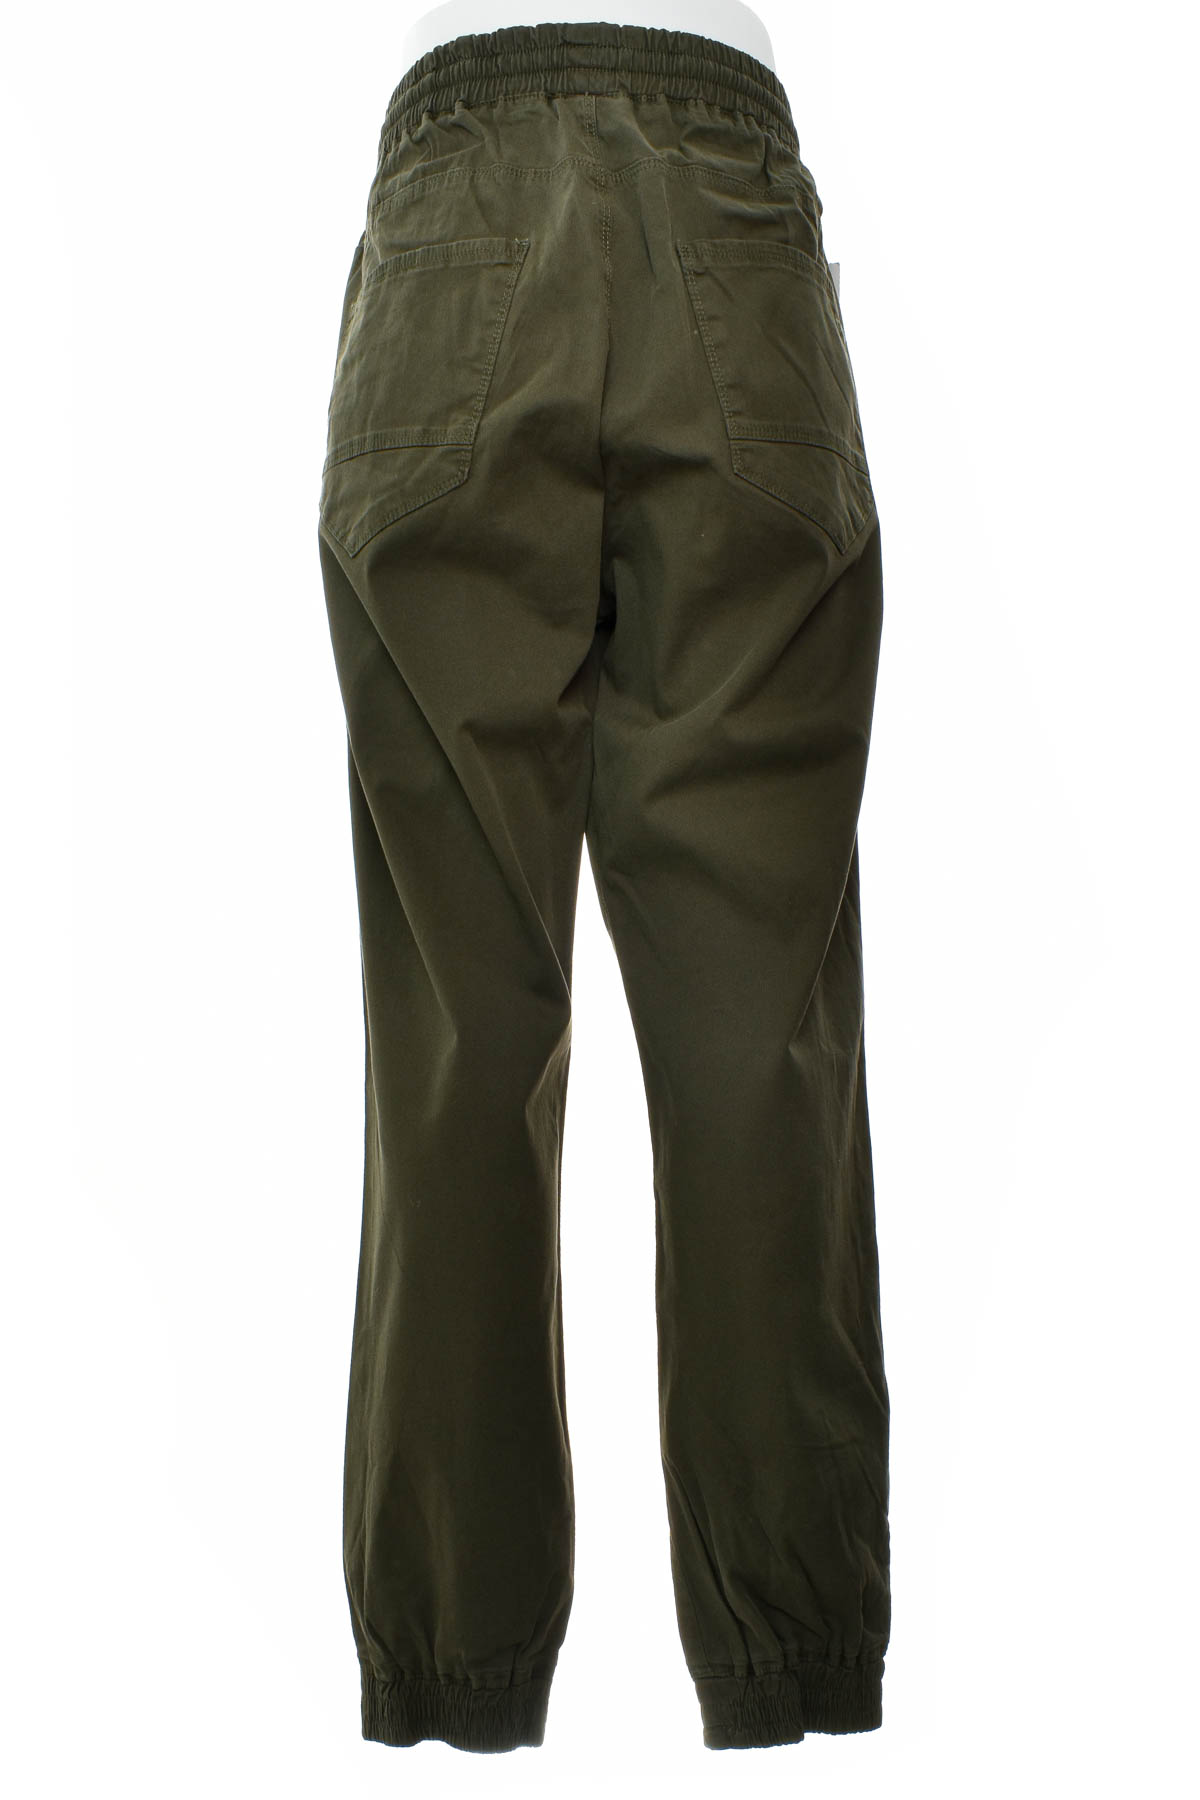 Pantalon pentru bărbați - LTB - 1